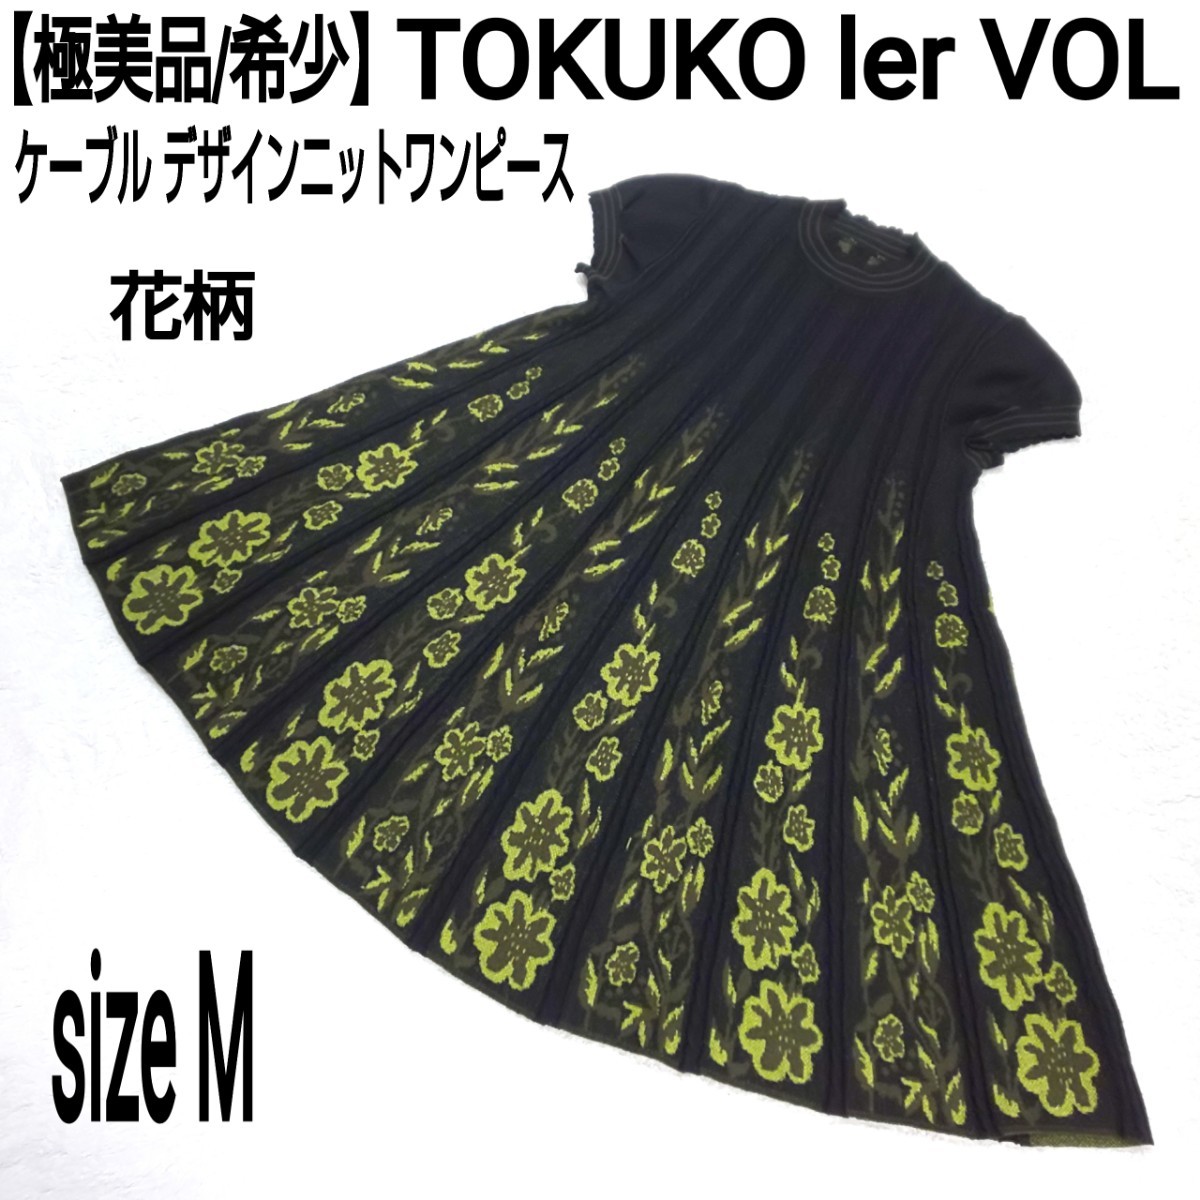 【極美品/希少】TOKUKO 1er VOL トクコプルミエヴォル ケーブル デザインニットワンピース(M) 花柄 レトロ モダン 総柄 ブラック×グリーン